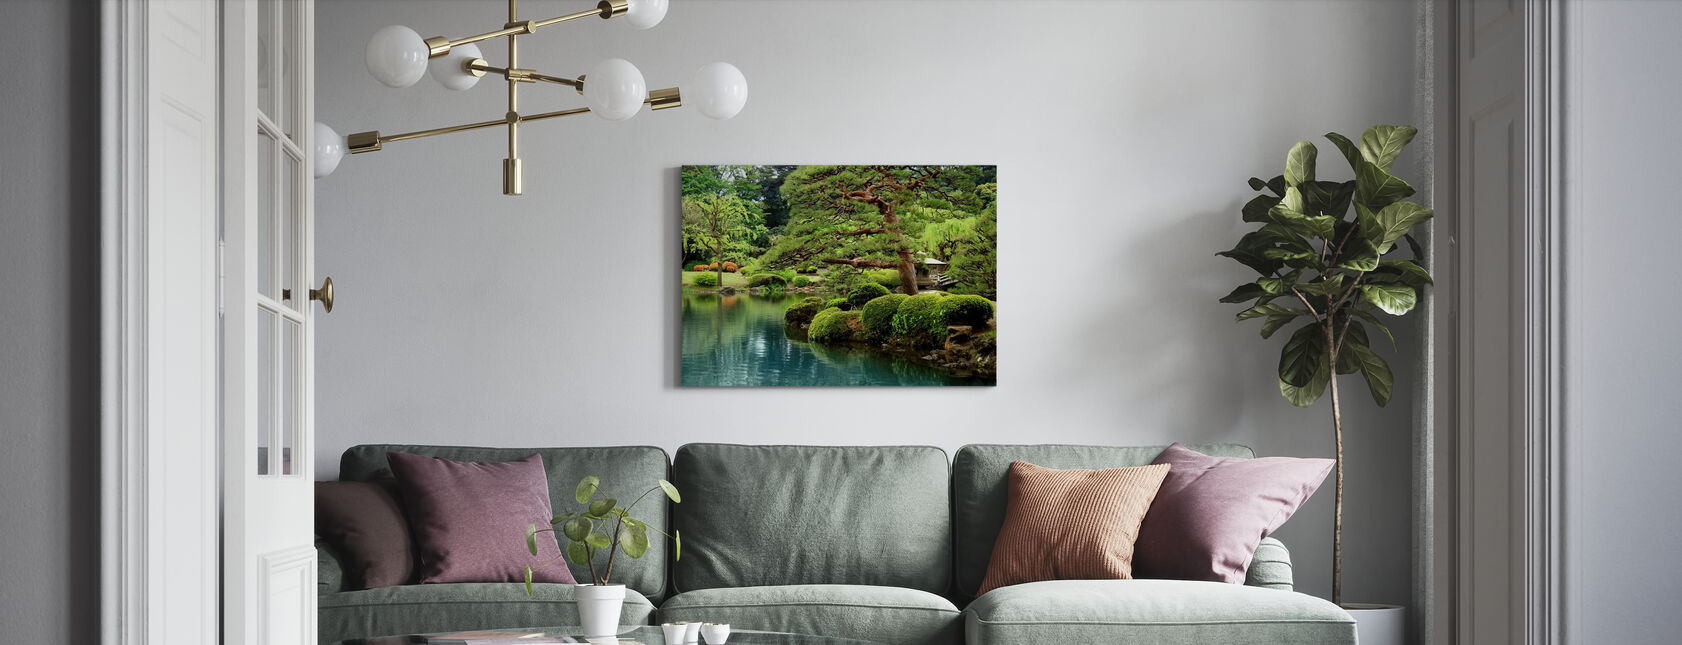 Calm Zen Lake and Bonsai Trees in Tokyo Garden - Canvas print - Living Room